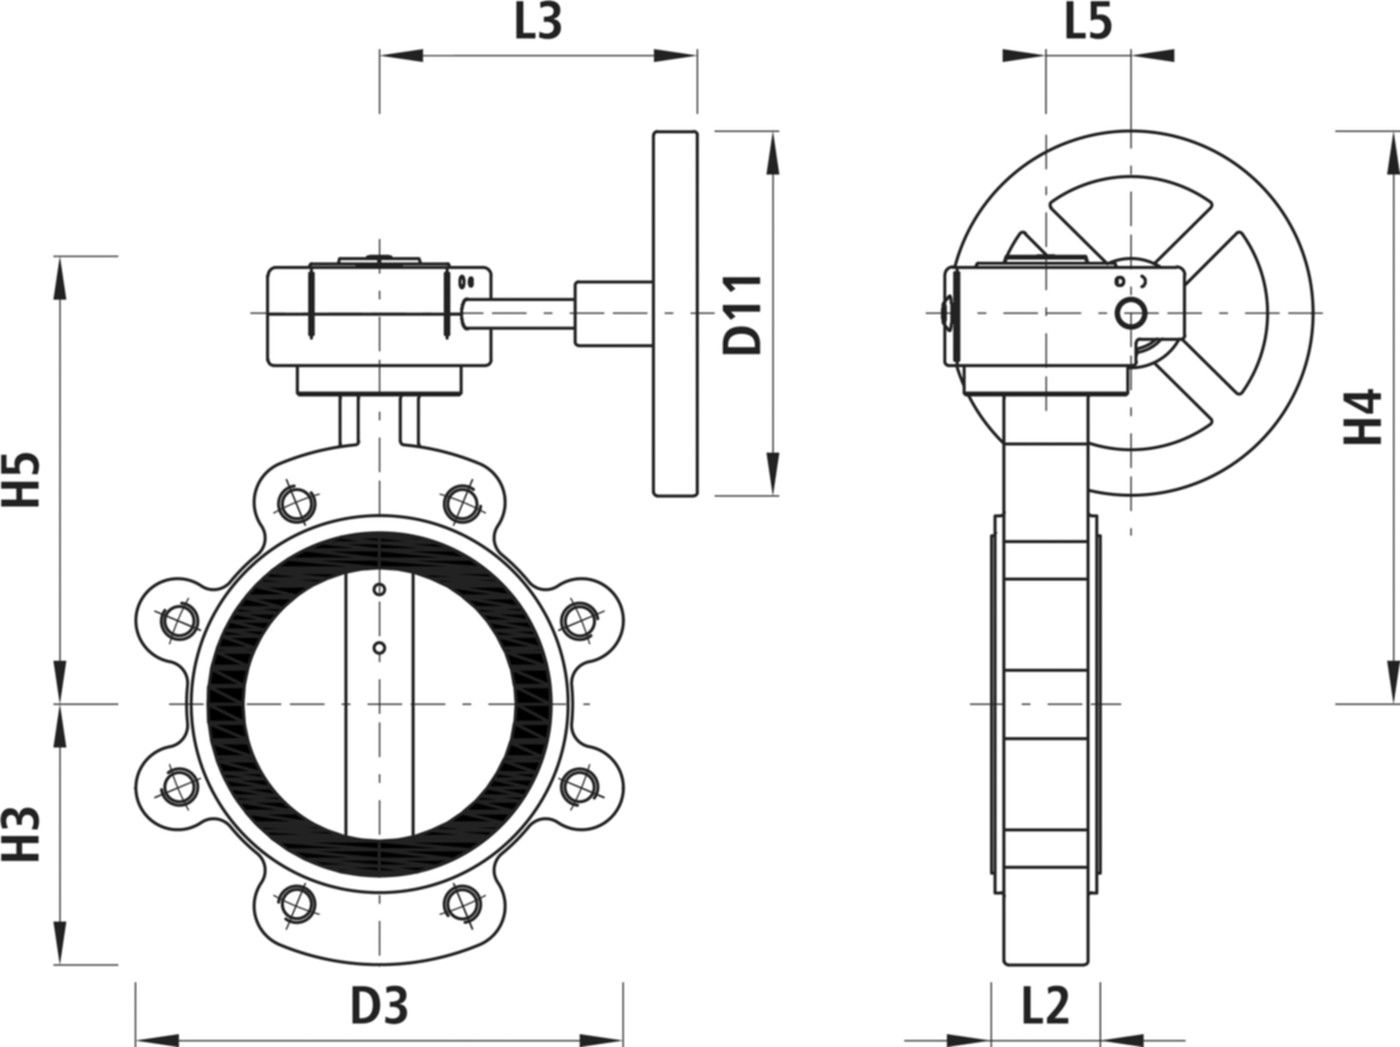 Absperrklappe mit Getriebe Typ LT 9937 für Gas DN 80 PN 16 - Hawle Absperrklappen